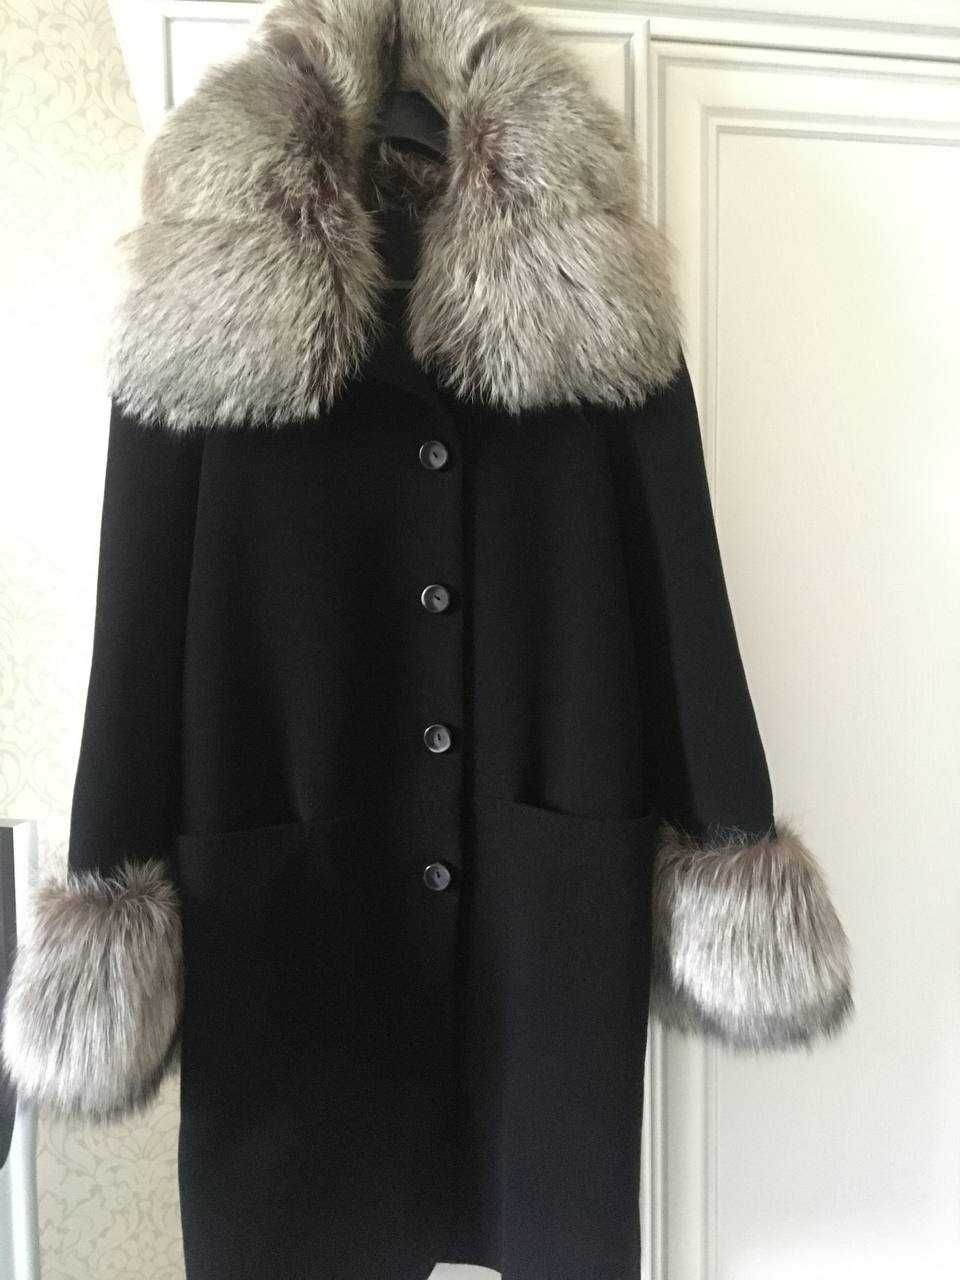 Женское пальто с мехом чернобурки STELLA POLARE Италия. Сезон -зима.